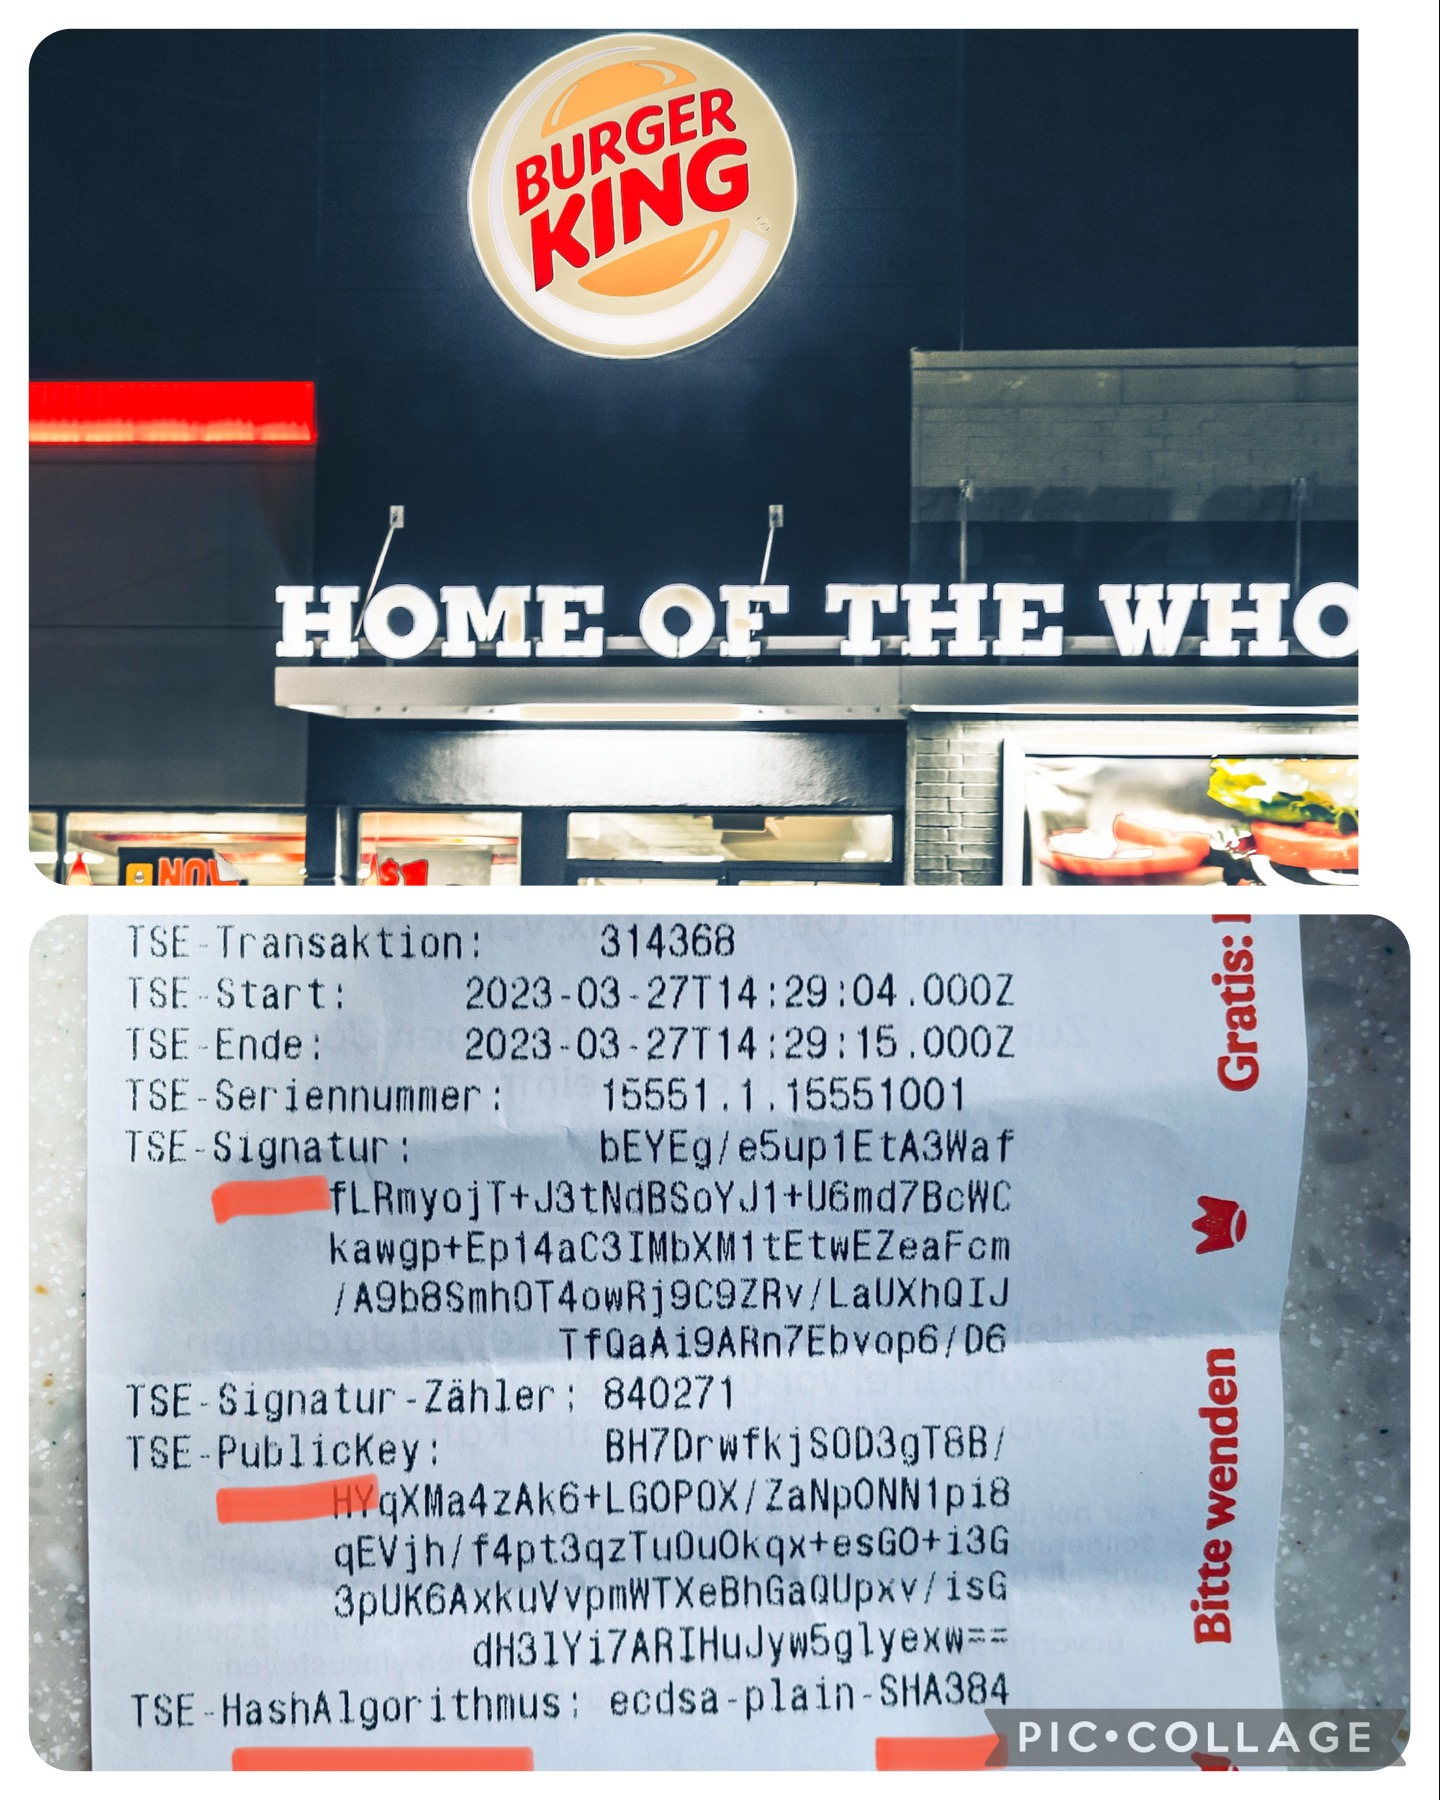 @borsengelaber/burger-king-verwendet-kryptographie-cryptography-at-burger-king